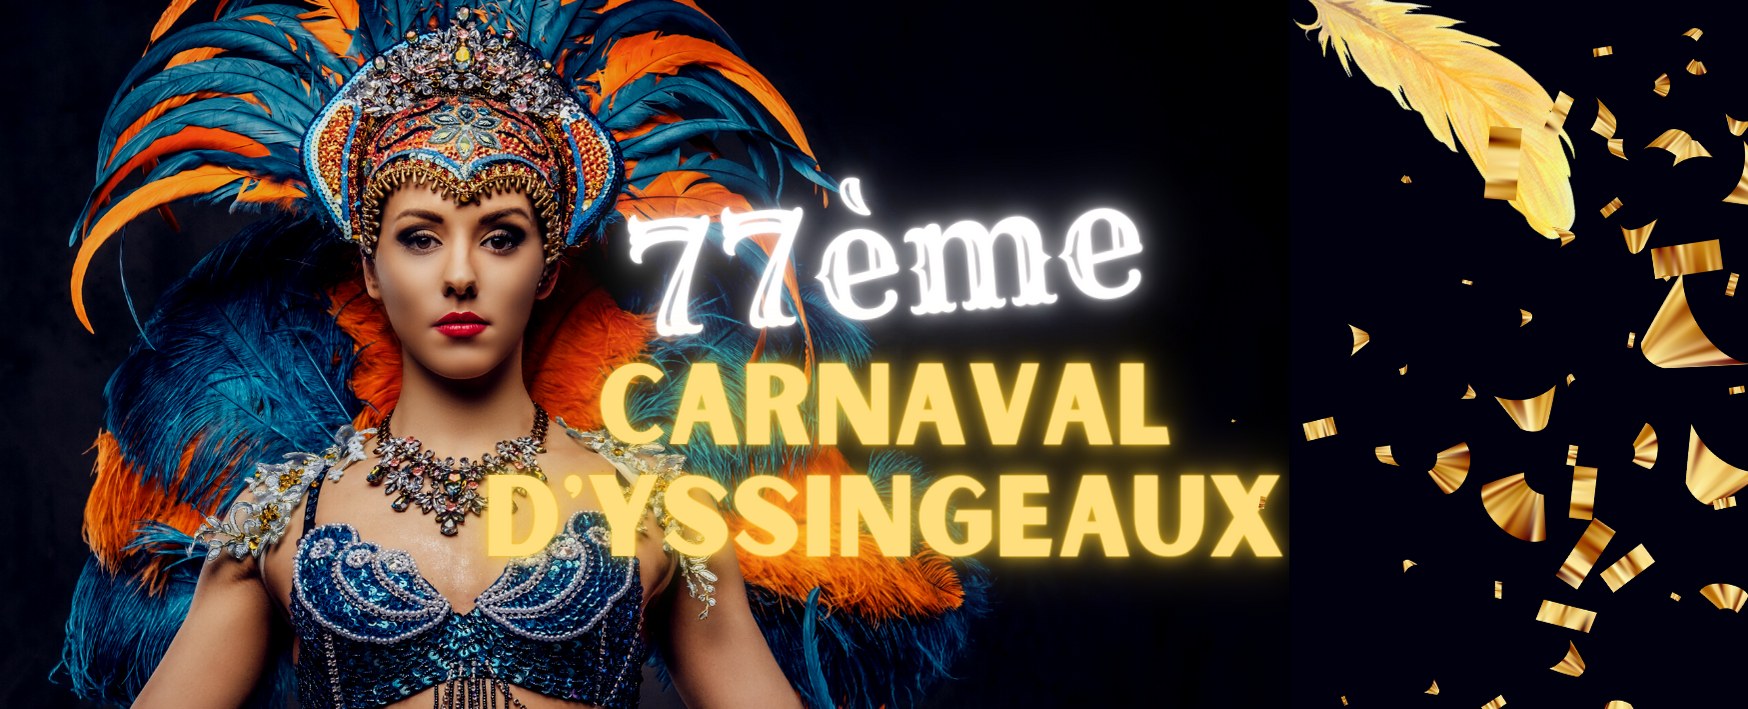 77ème Carnaval d'Yssingeaux